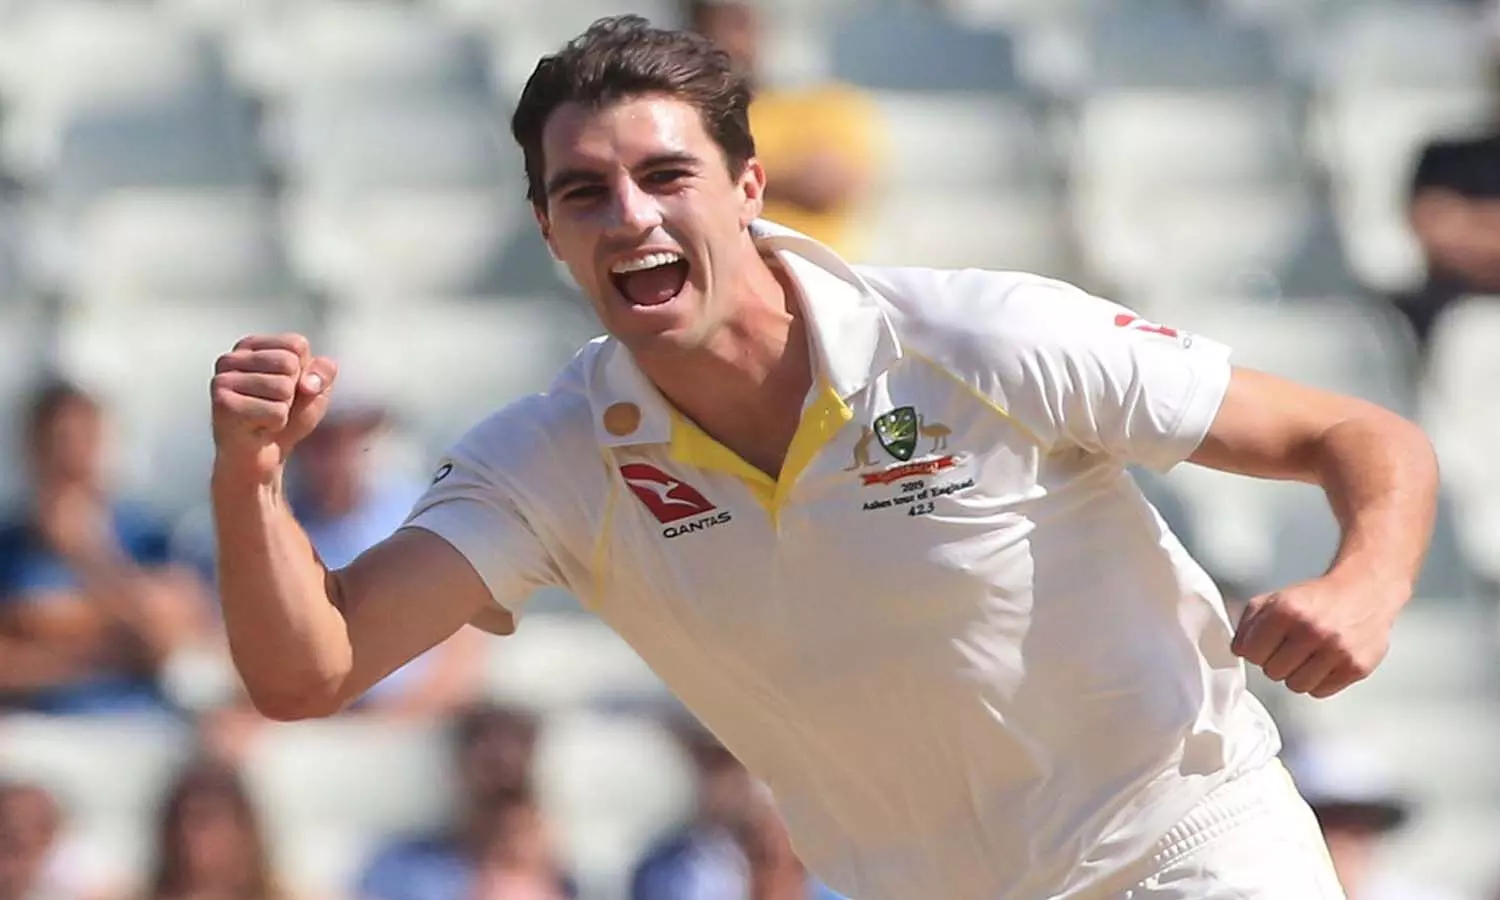 New Australia Test Captain: टीम को मिला नया कप्तान, ऑस्ट्रेलिया टेस्ट क्रिकेट टीम के नए कैप्टन बने पैट कमिंस, स्वीट स्मिथ को सौंपी गई उपकप्तानी